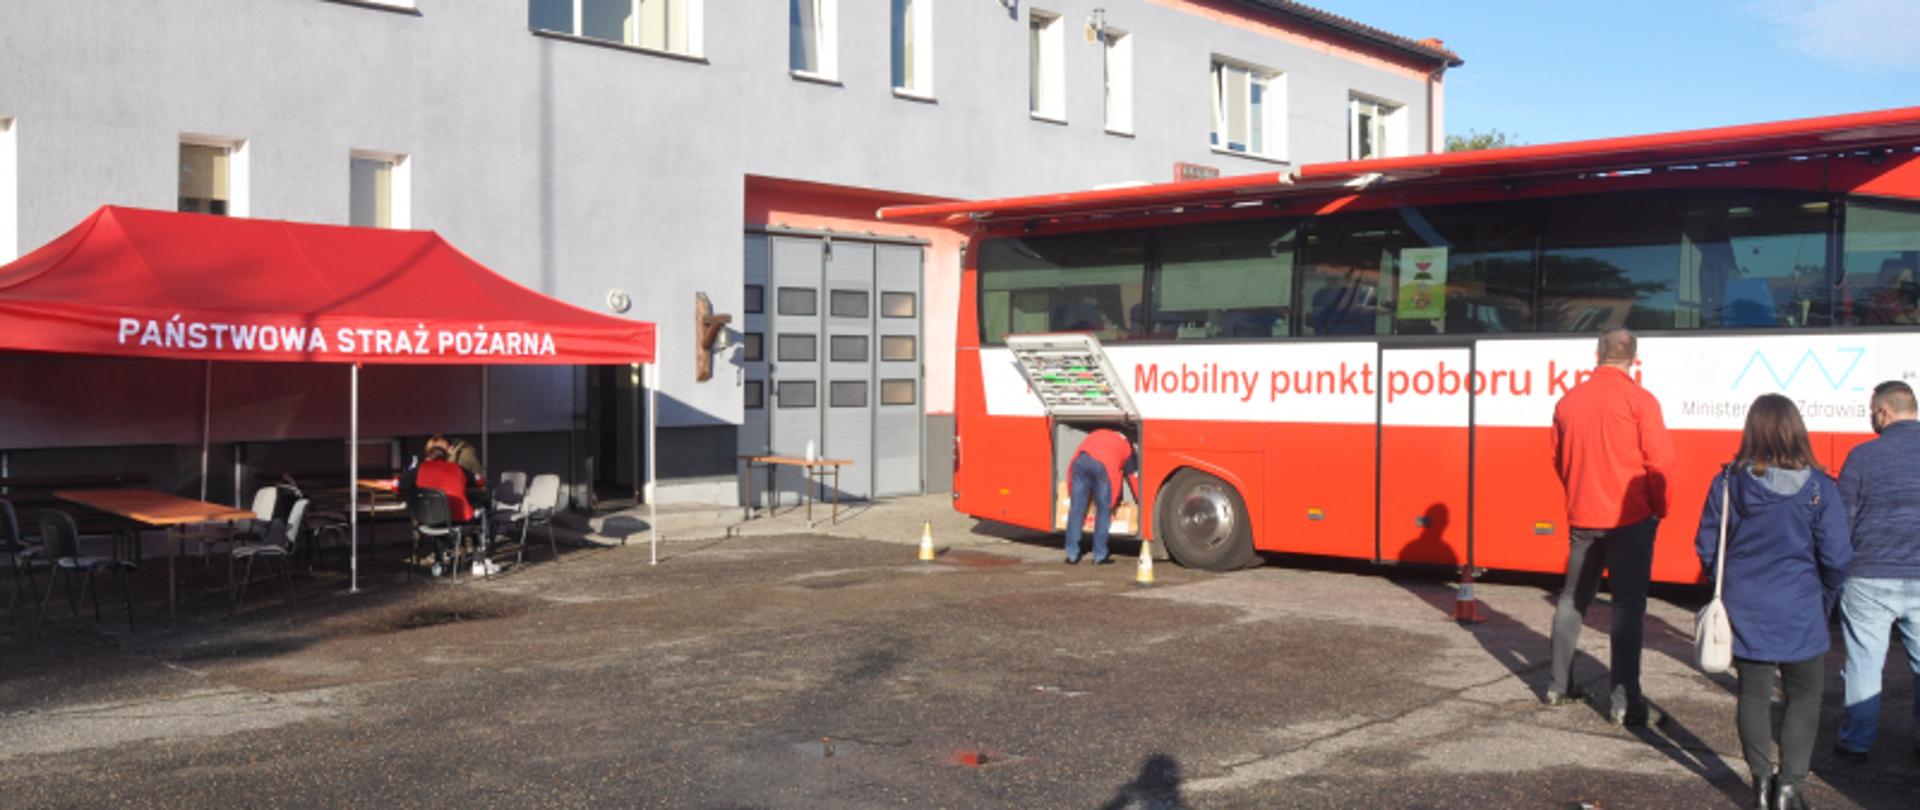 
Na zdjęciu widoczny budynek KP PSP w Lidzbarku Warmińskim. Po prawej stronie budynku widzimy mobilny punk poboru krwi – autobus, oraz osoby deklarujące chęć honorowego oddania krwi.
